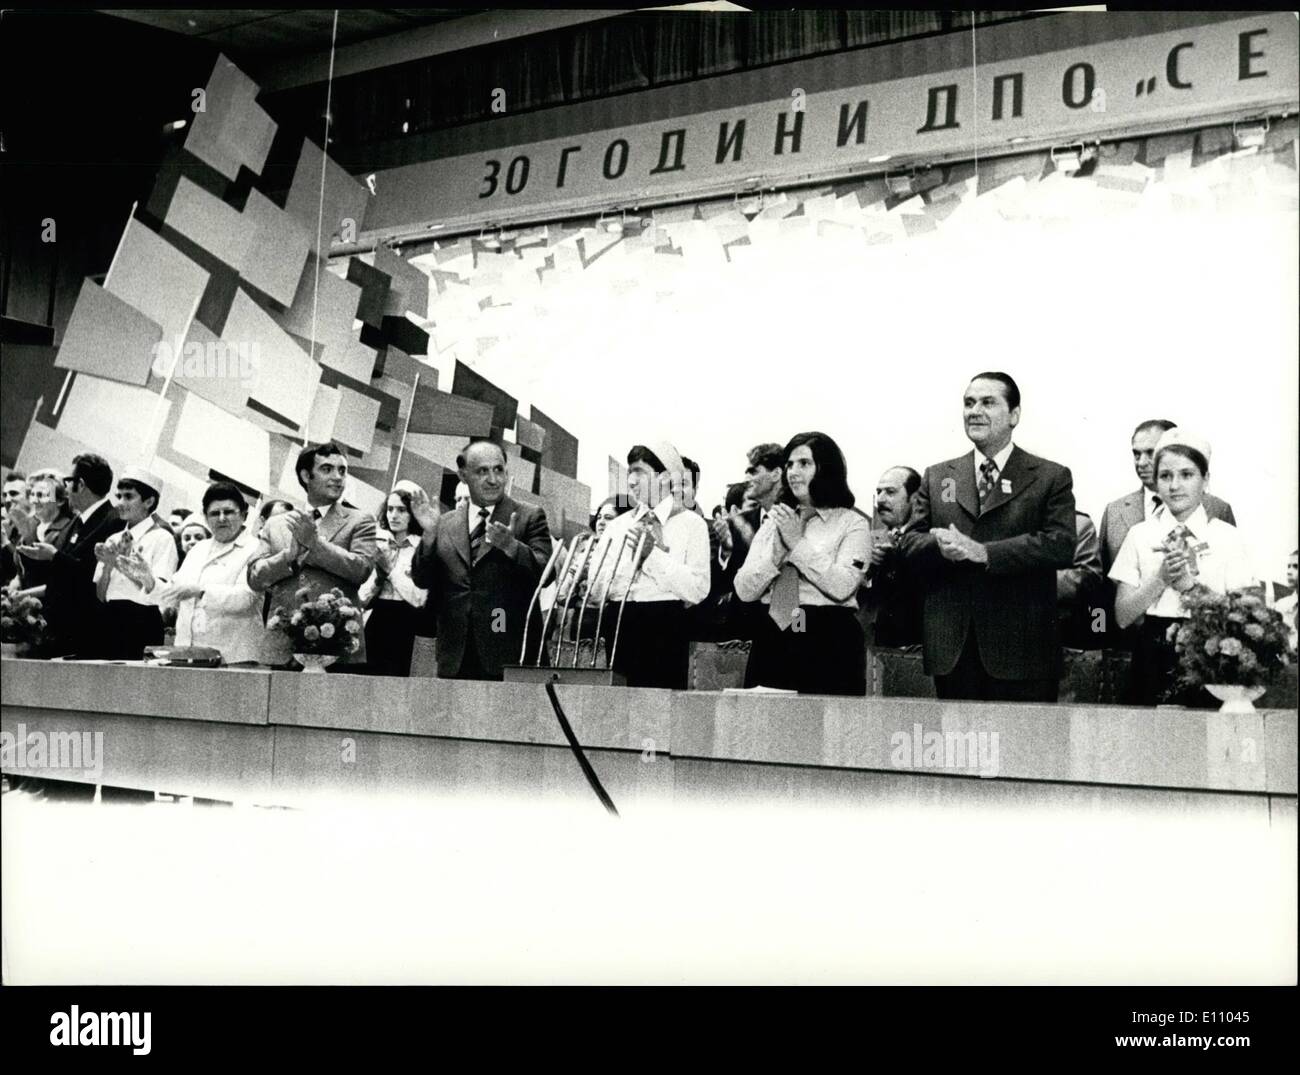 Sept. 09, 1974 - 30. Jahrestag des '' Septemvryiche'' Dimitrov Pionier Organisation.: am 23. September. Politbüro Mitglieder des Zentralkomitees der kommunistischen Partei Bulgariens hatte ein Treffen mit Pioniere anlässlich des 30. Jahrestages der Pionierorganisation '' Septemvryiche'' Dimitrov. Das Foto zeigt das Präsidium des Treffens. Abgebildete fünften R-l ist Todor Schiwkow erster Sekretär des Zentralkomitees der kommunistischen Partei Bulgariens und Staatspräsident Rat, zu seiner rechten Encho Moscov, erster Sekretär des zentralen Ausschusses von Dimitrov Kommunistischen Jugendverbandes. Stockfoto